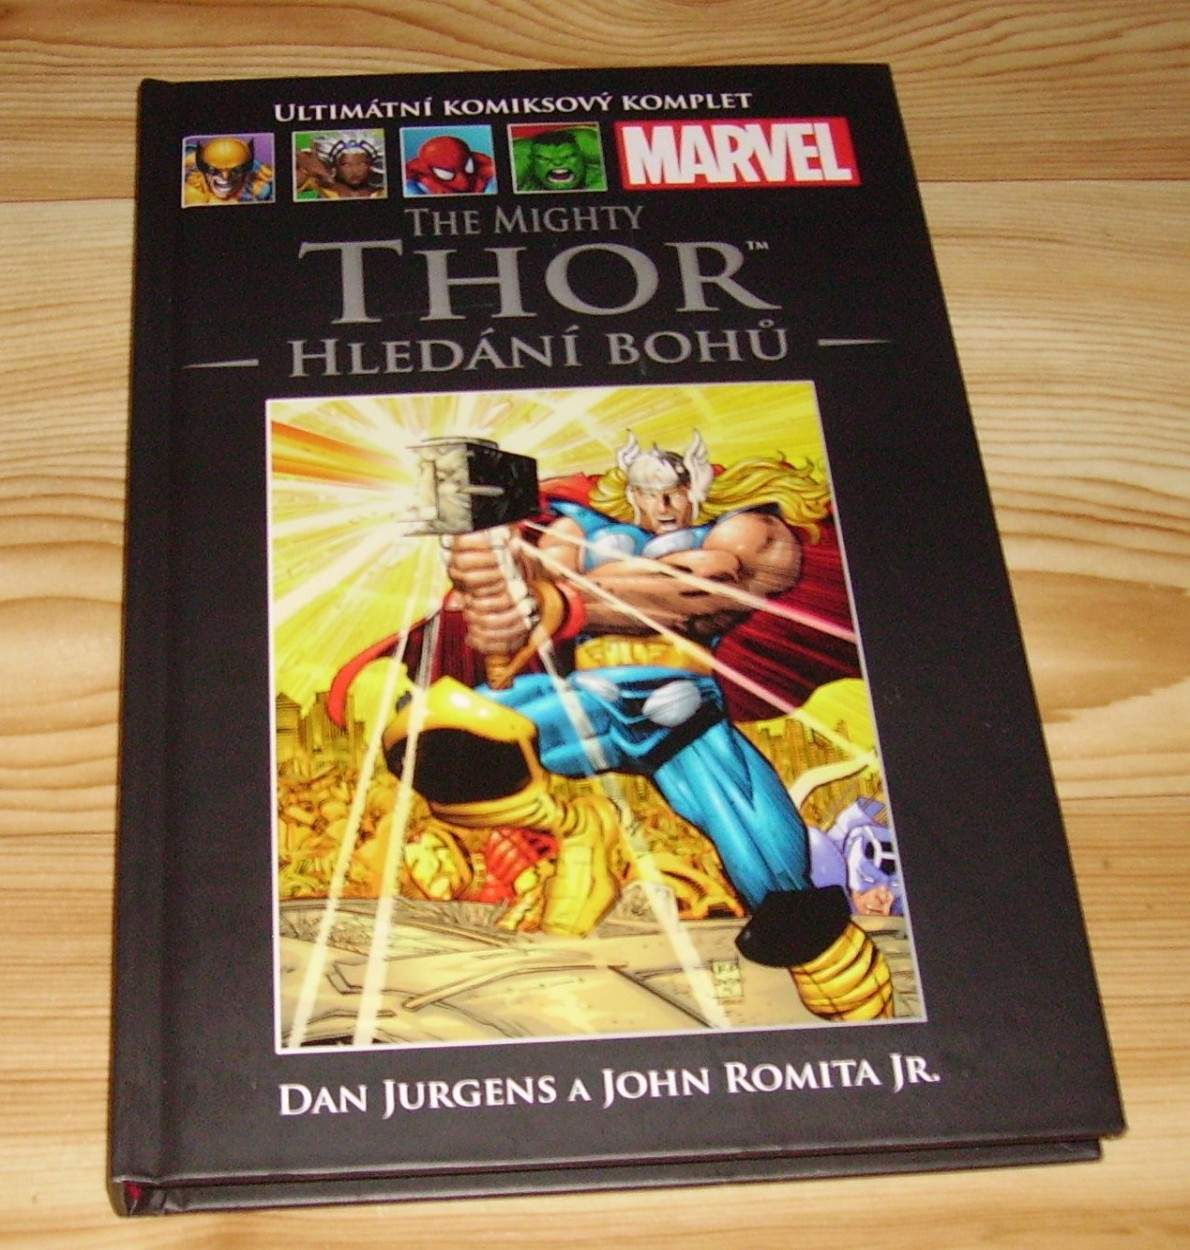 The Mighty Thor: Hledání bohů (013)